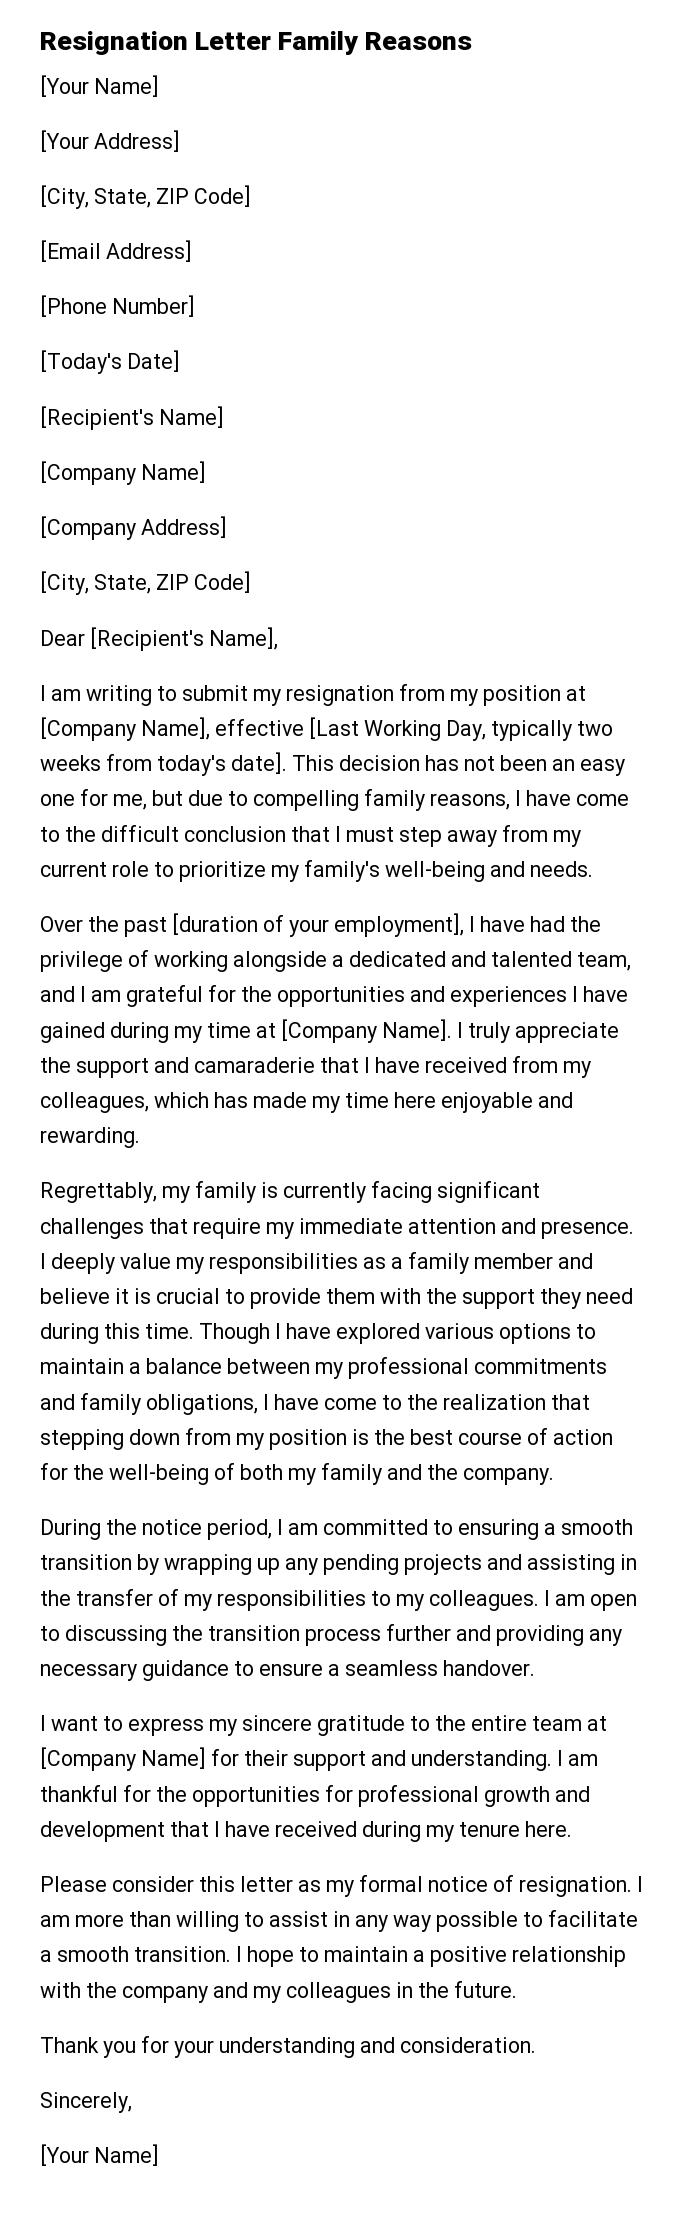 Resignation Letter Family Reasons